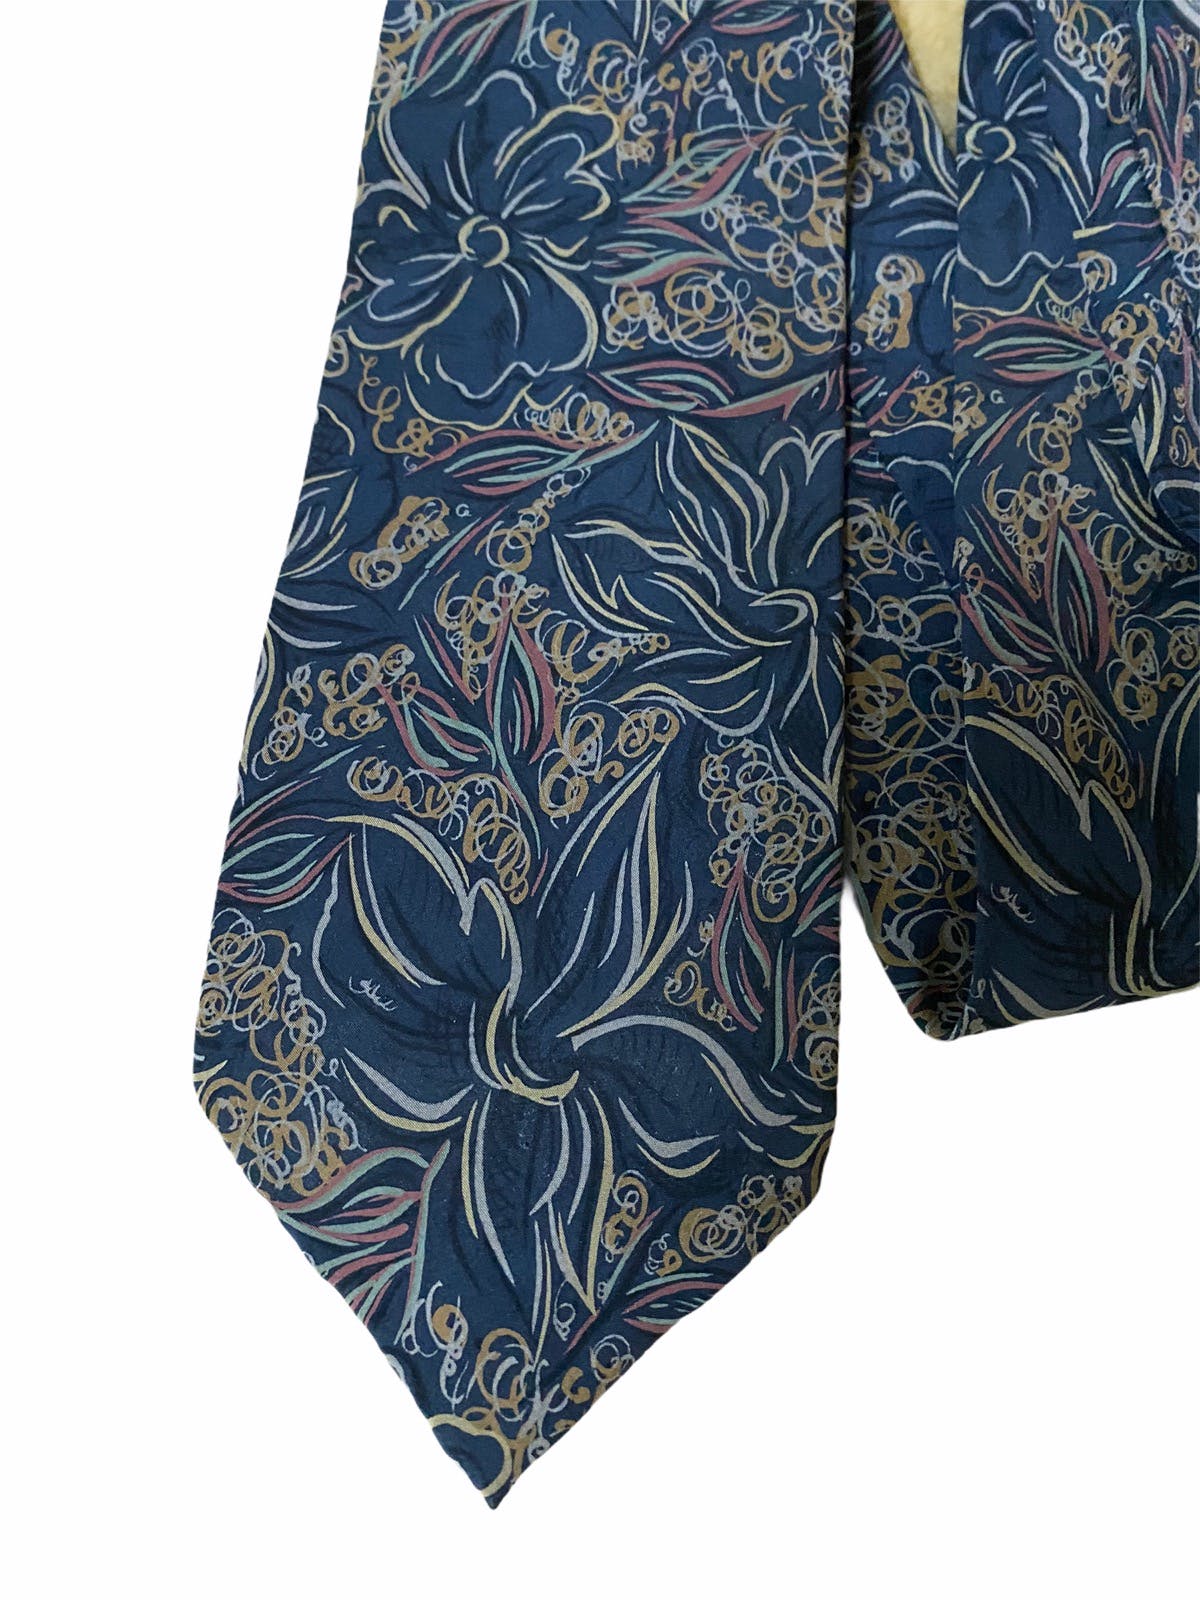 Vintage Valentino Flowers Overprints Silk Necktie - 2